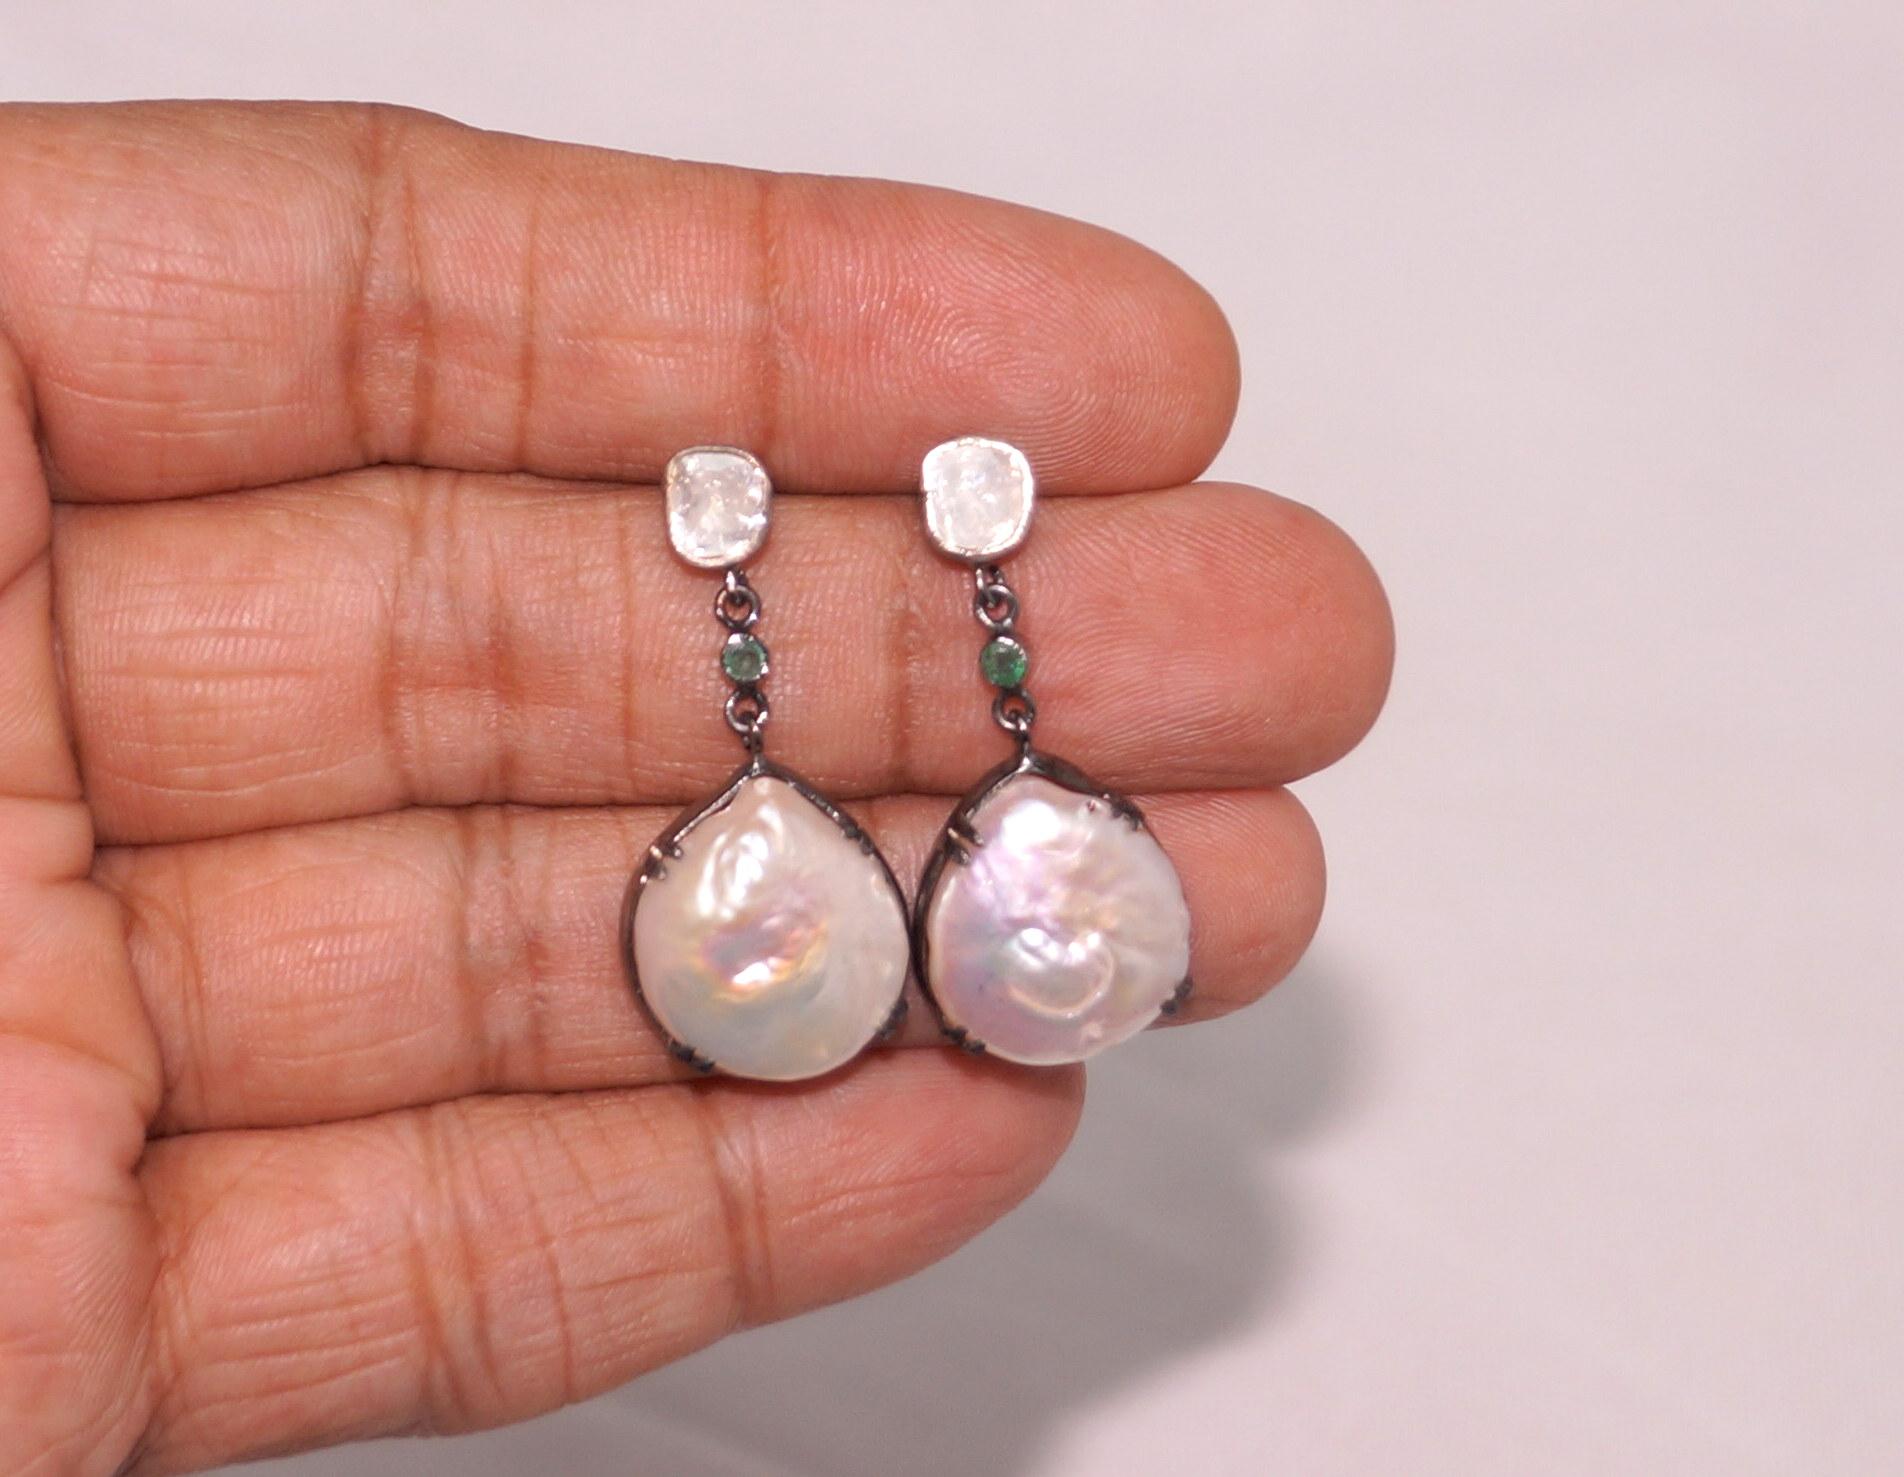 Atemberaubende Barock Perle Diamant Sterling Silber Ohrringe besteht aus :

Hauptedelstein - Perle
Typ- Natürliche Barockperle
Metall- Silber
Metall Reinheit- Sterling Silber
Farbe des Metalls - oxidierter Silberlook
Diamanten- Natürliche